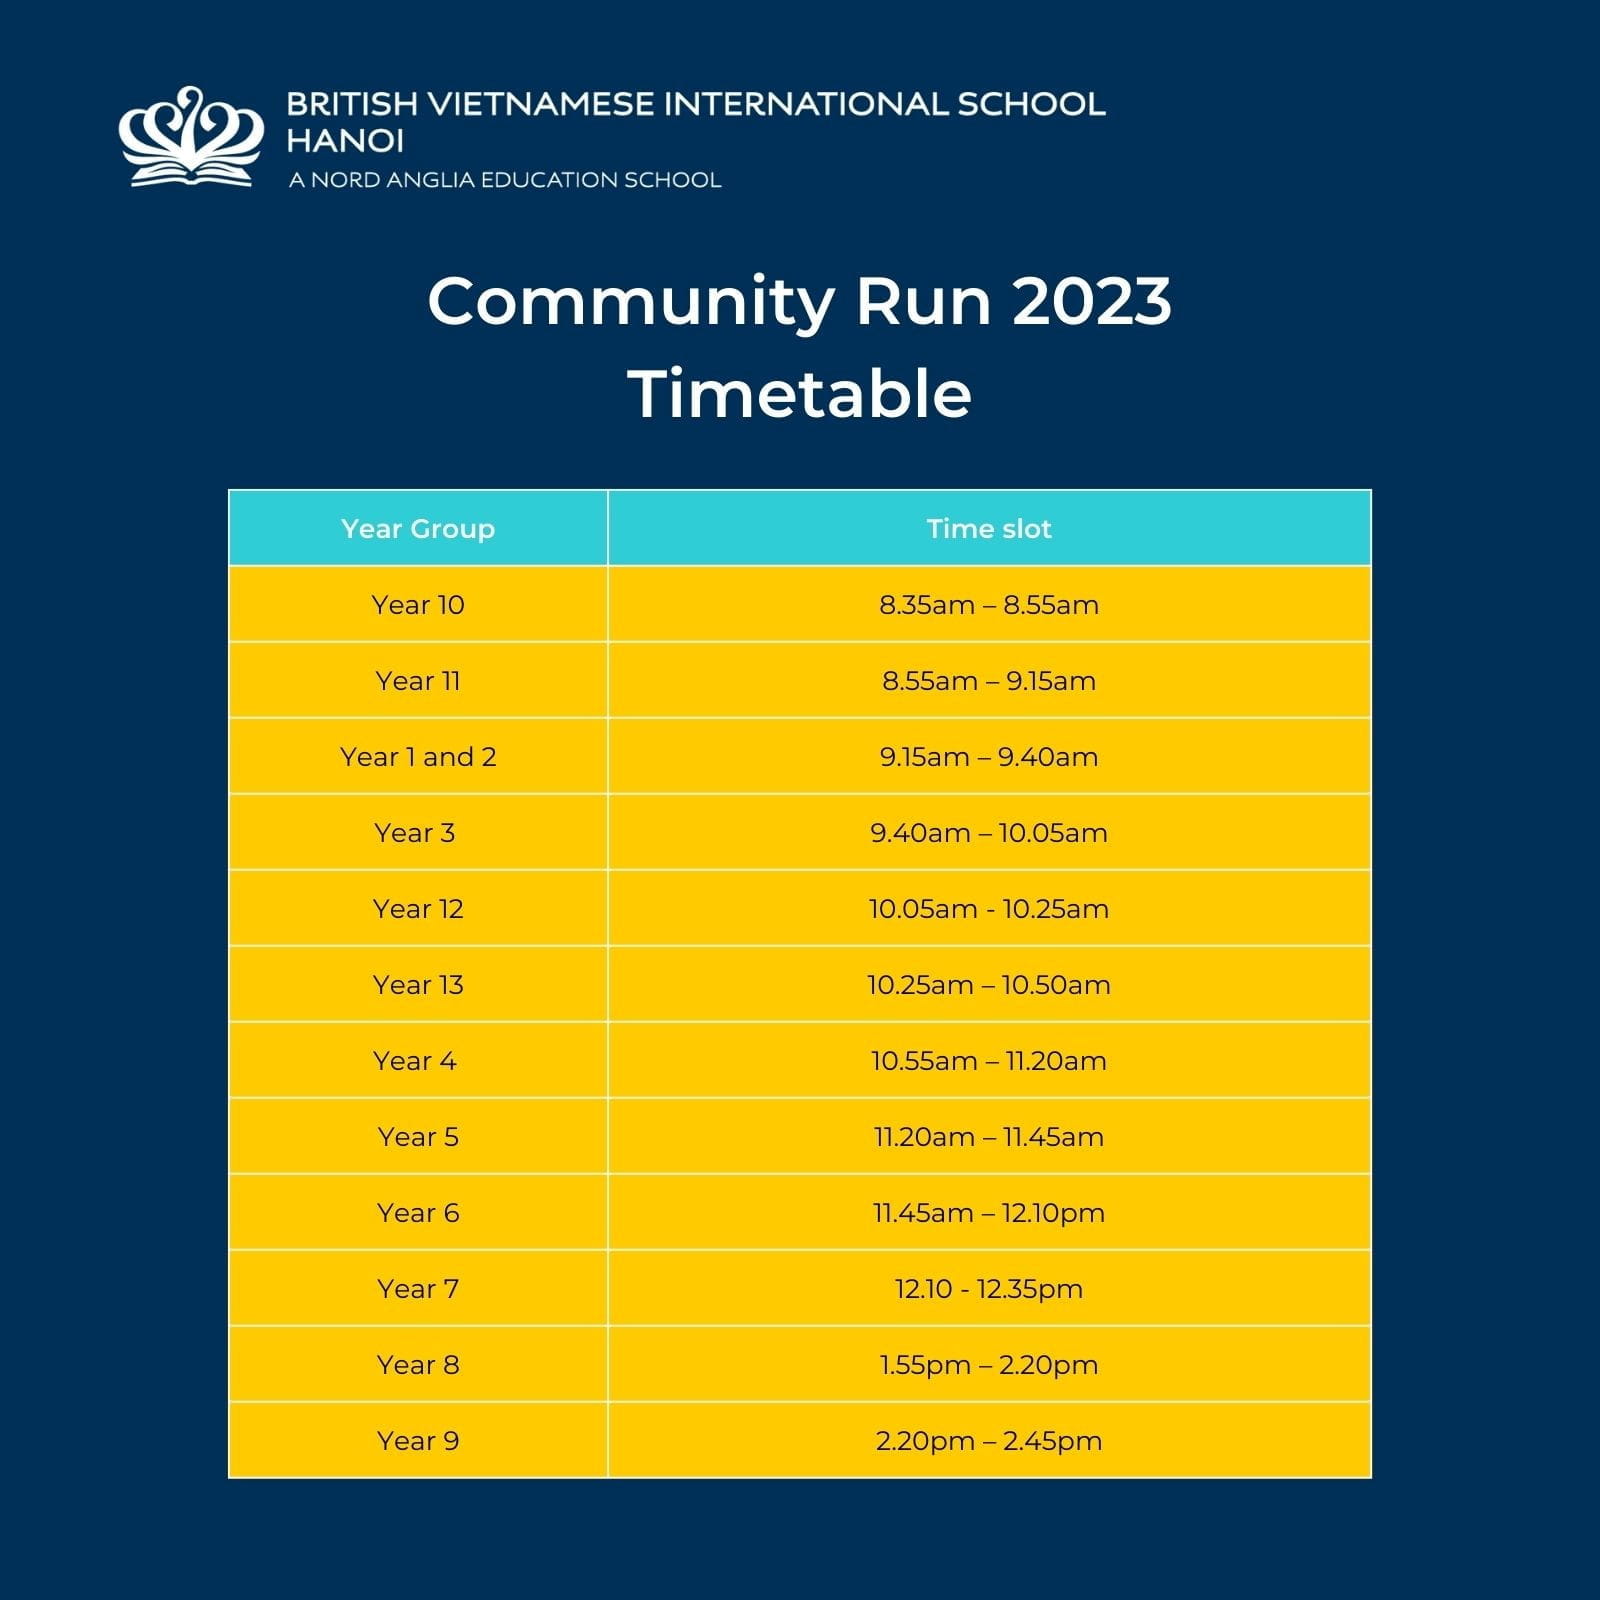 Community Run 2023 is back - Community Run 2023 is back